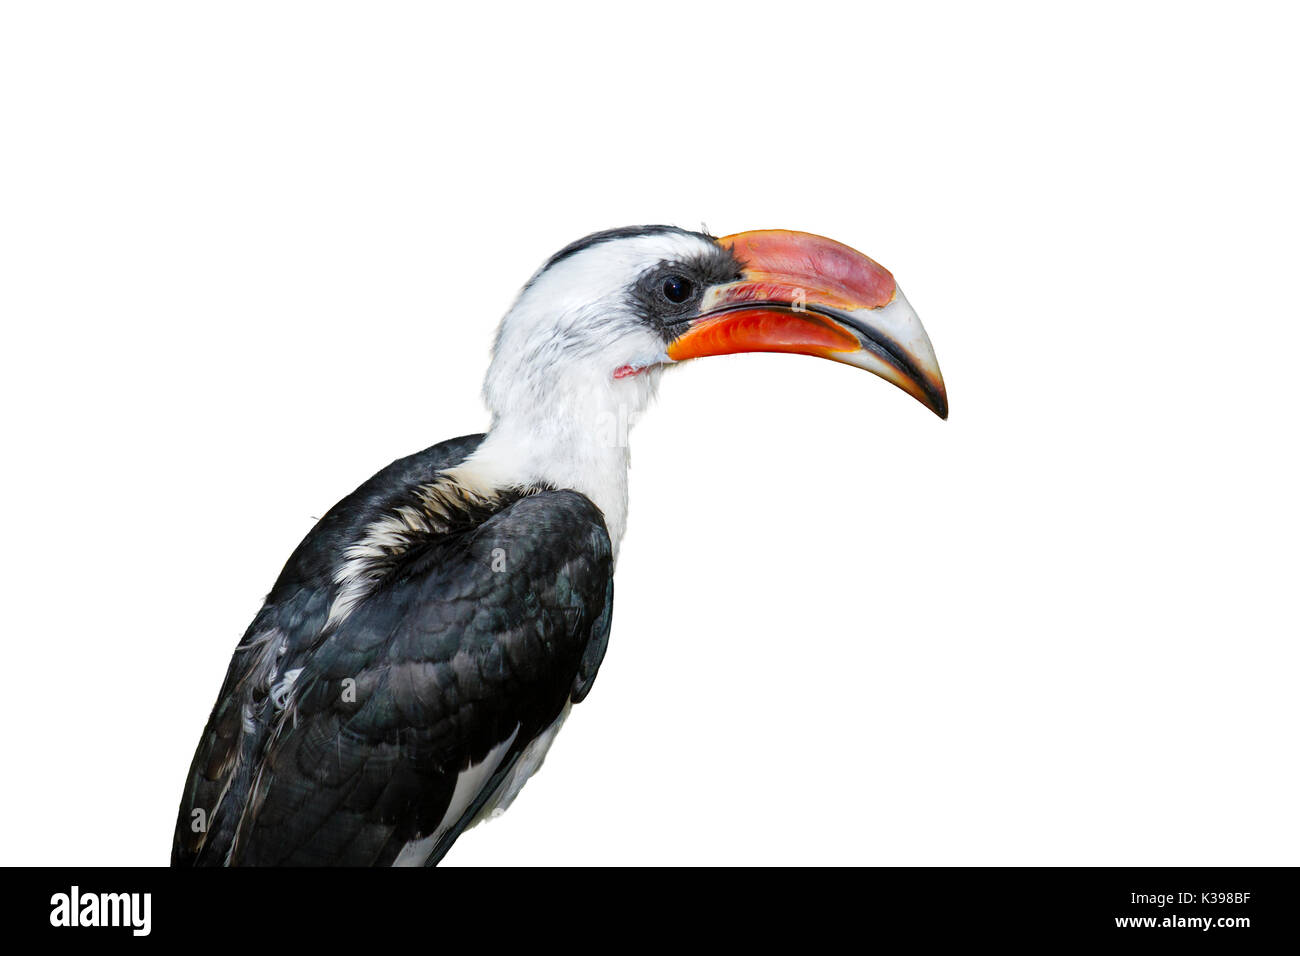 Von der Decken's hornbill isolated on white background Stock Photo